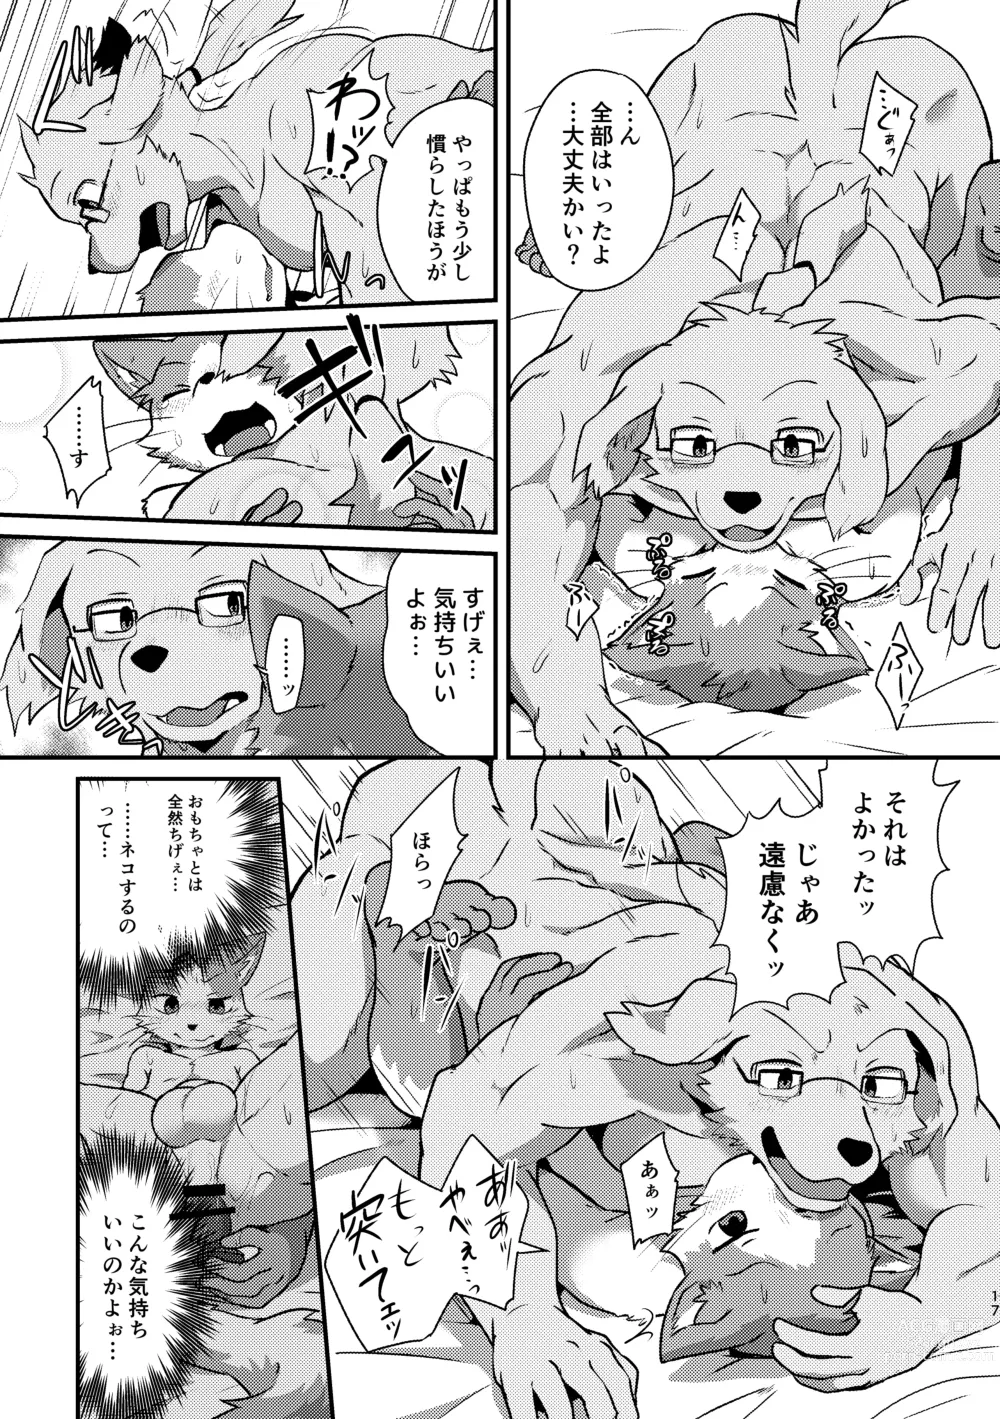 Page 41 of doujinshi Boku-Tachi Futari wa Neko shitai!